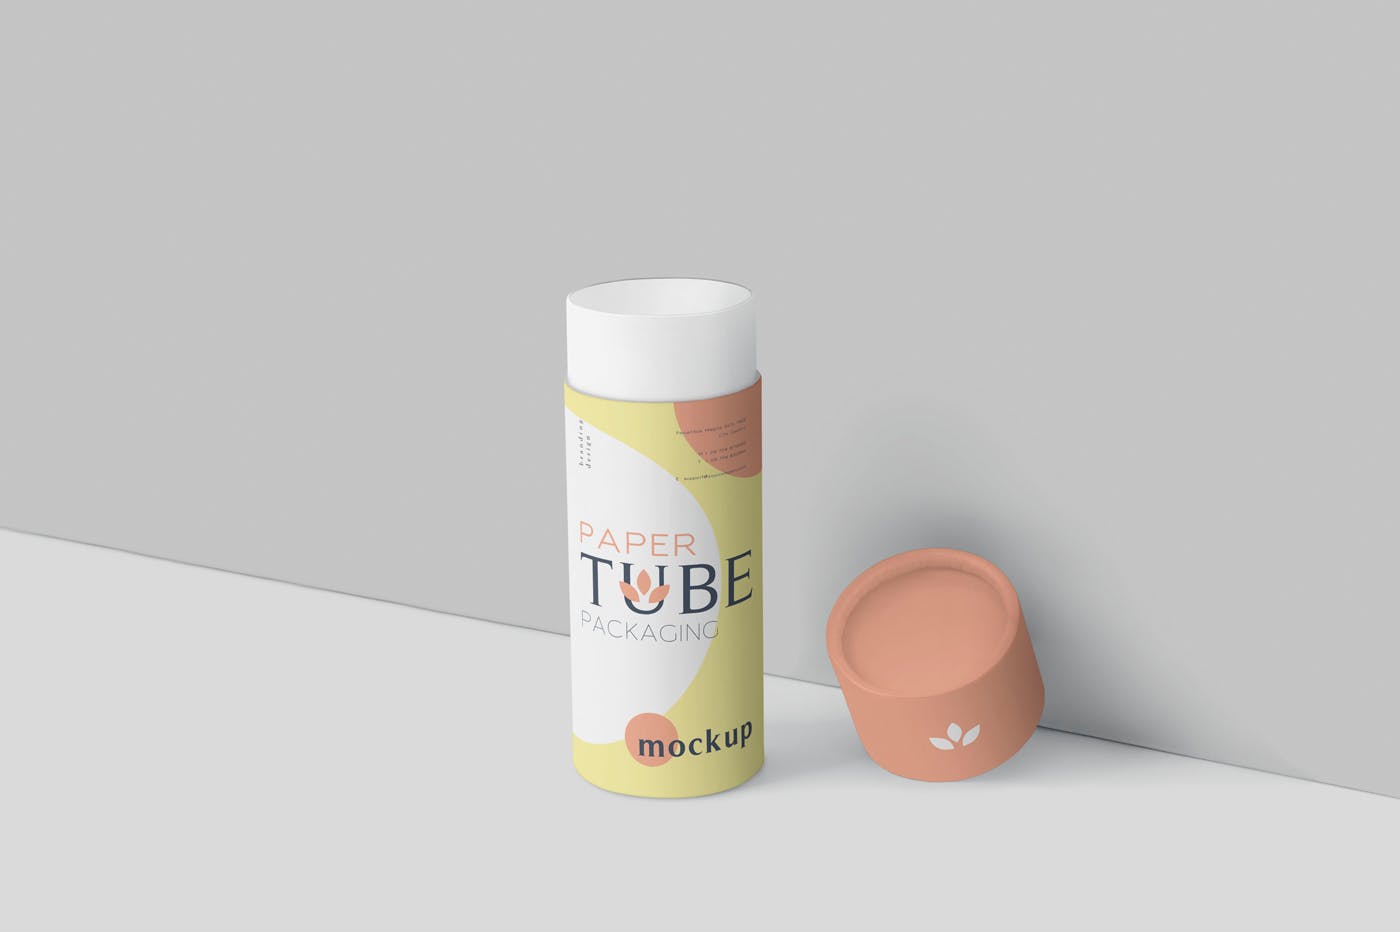 纸管包装外观设计效果图蚂蚁素材精选模板 Paper Tube Packaging Mockup Set – Slim插图(2)